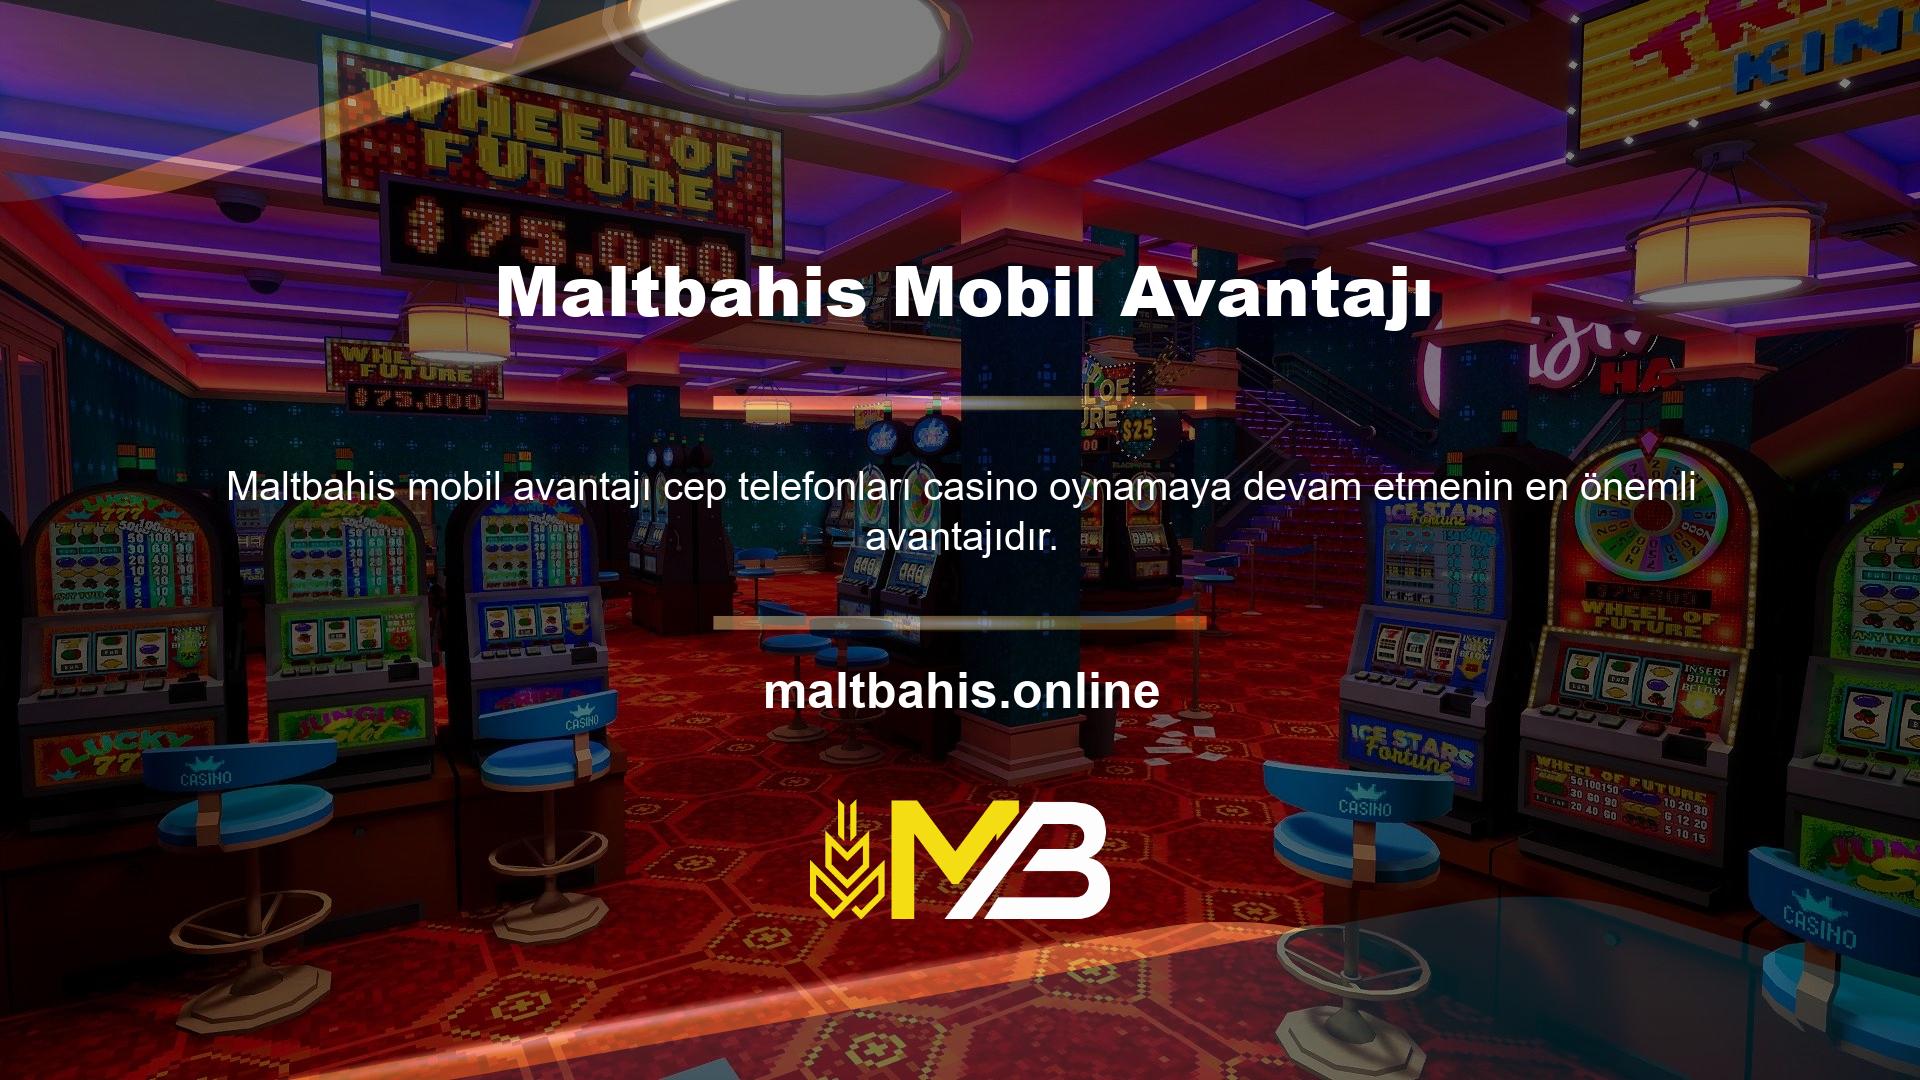 Cep telefonu kullanıcıları teknoloji tabanlı casino sitelerine hızlı bir şekilde para yatırabilir ve çekebilirler